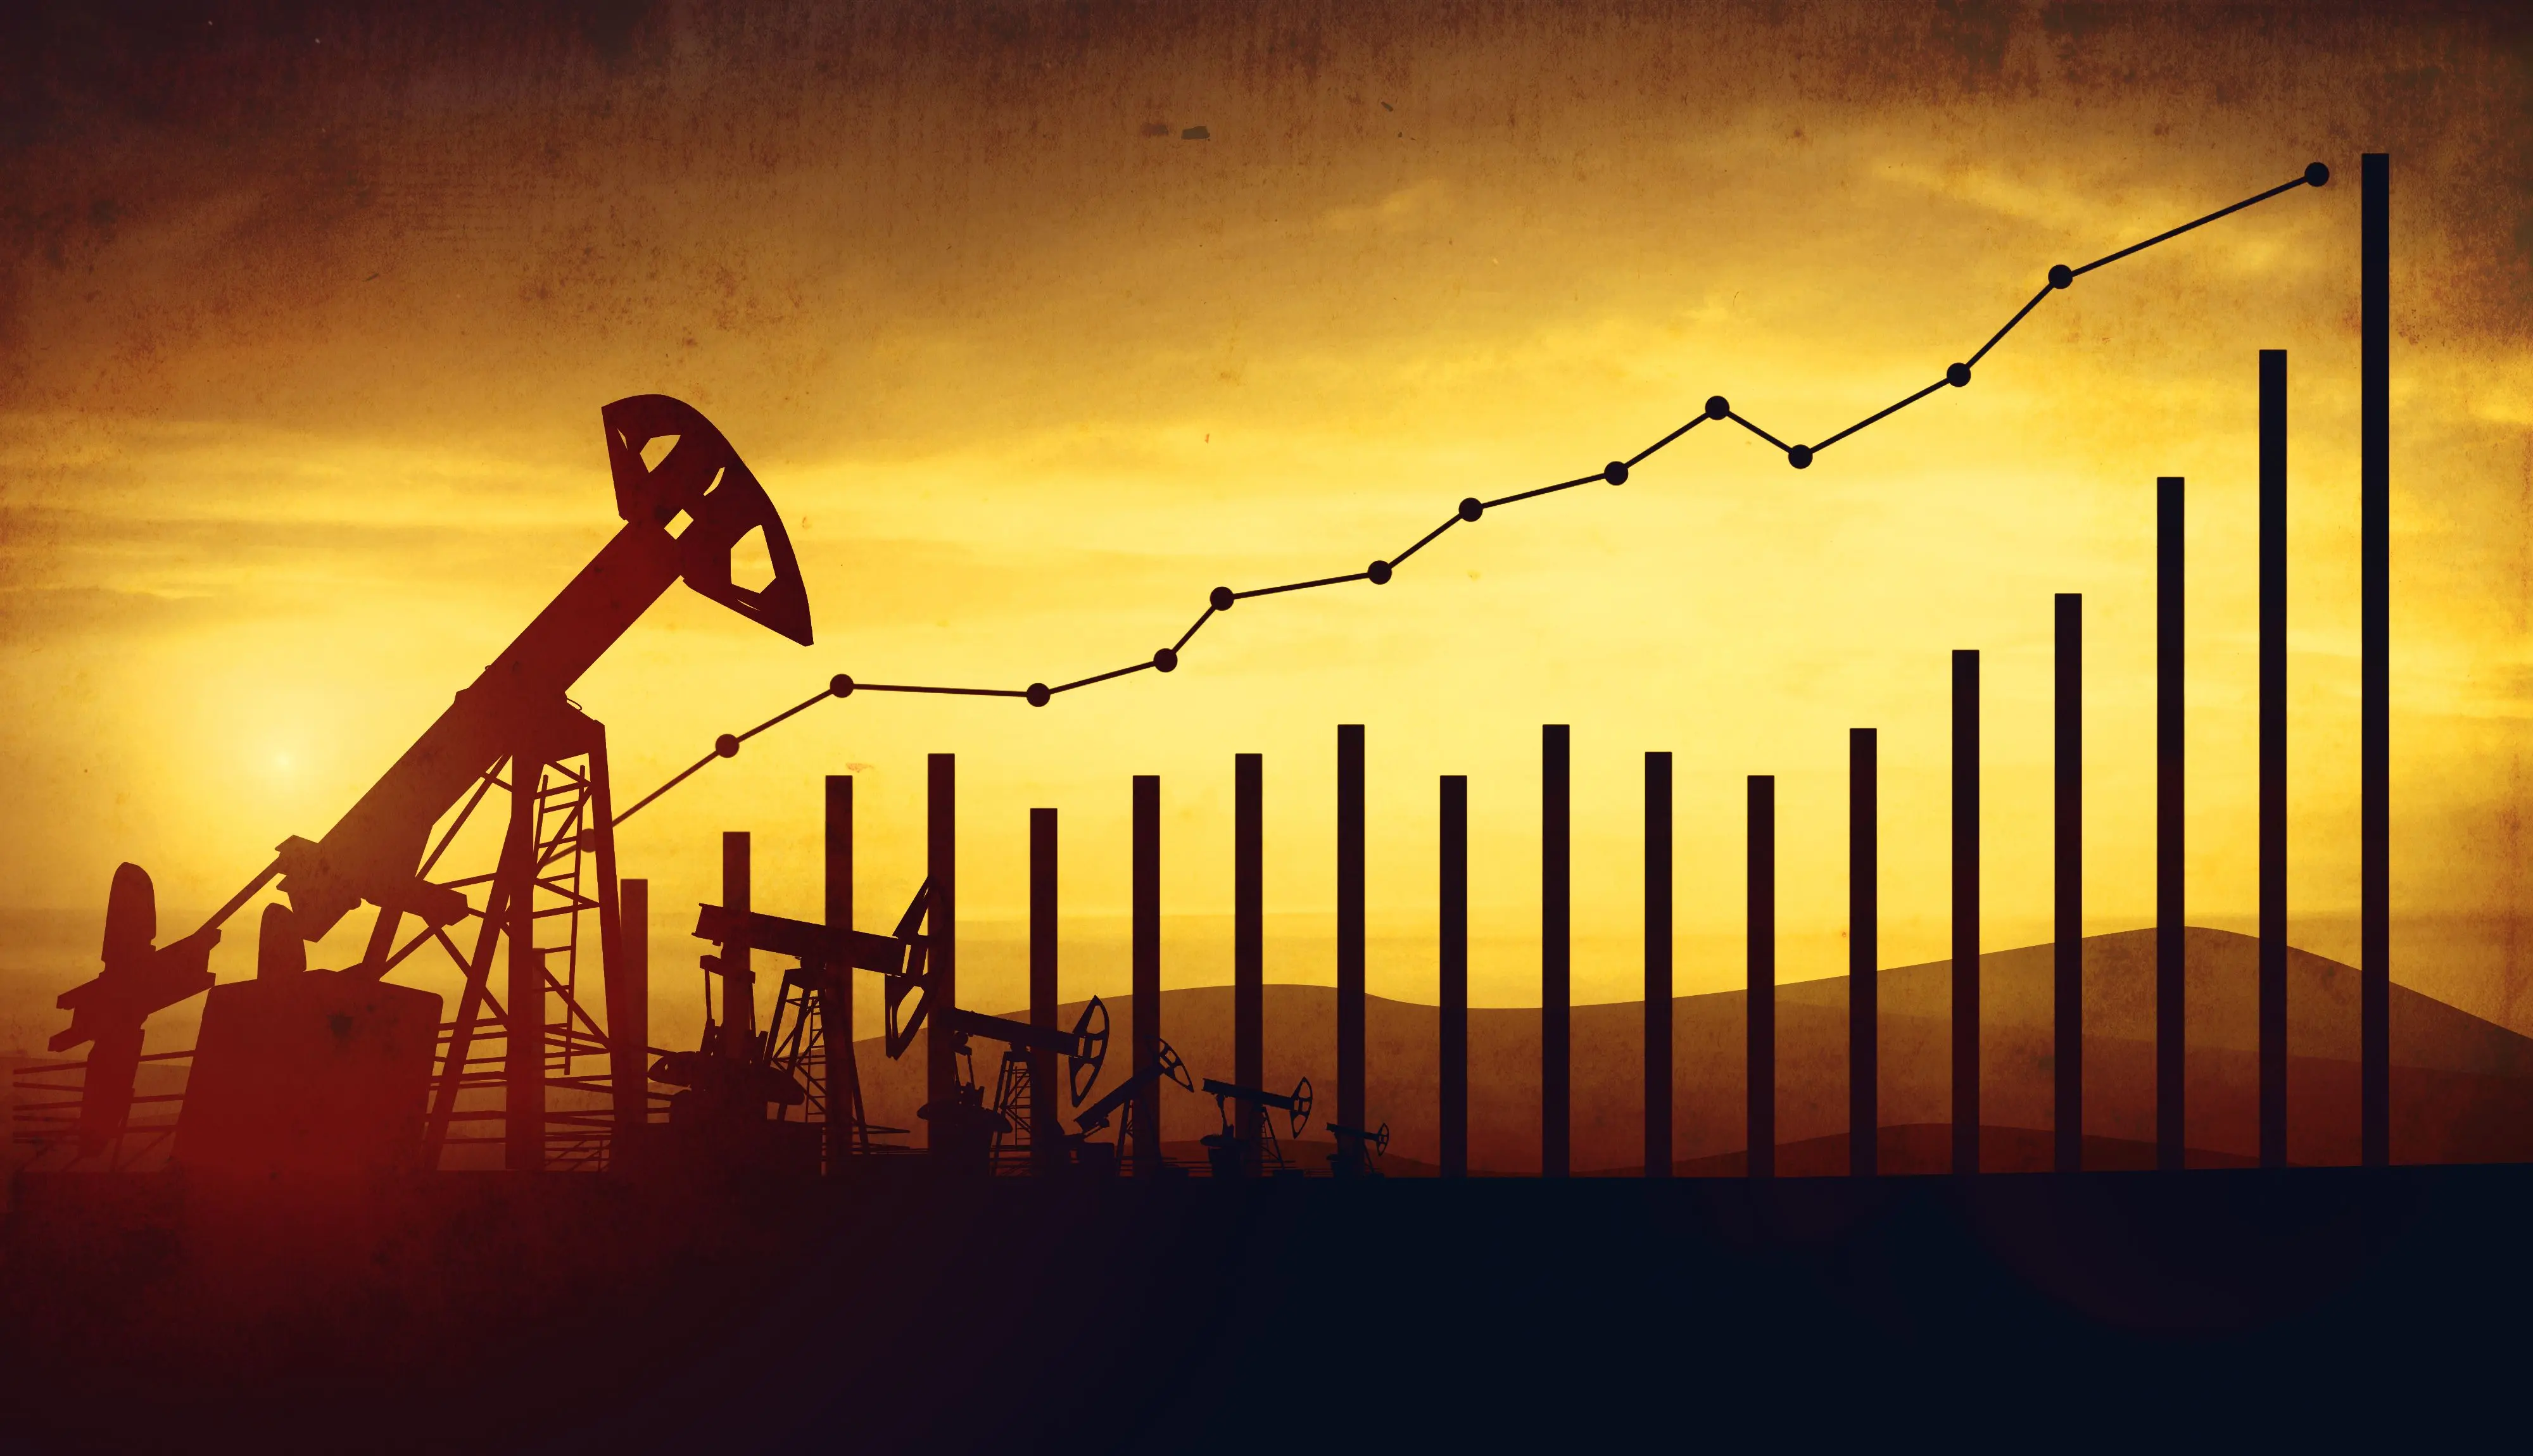 Наближений Схід продовжує переживати "подвиги": як це впливає на вартість нафти.